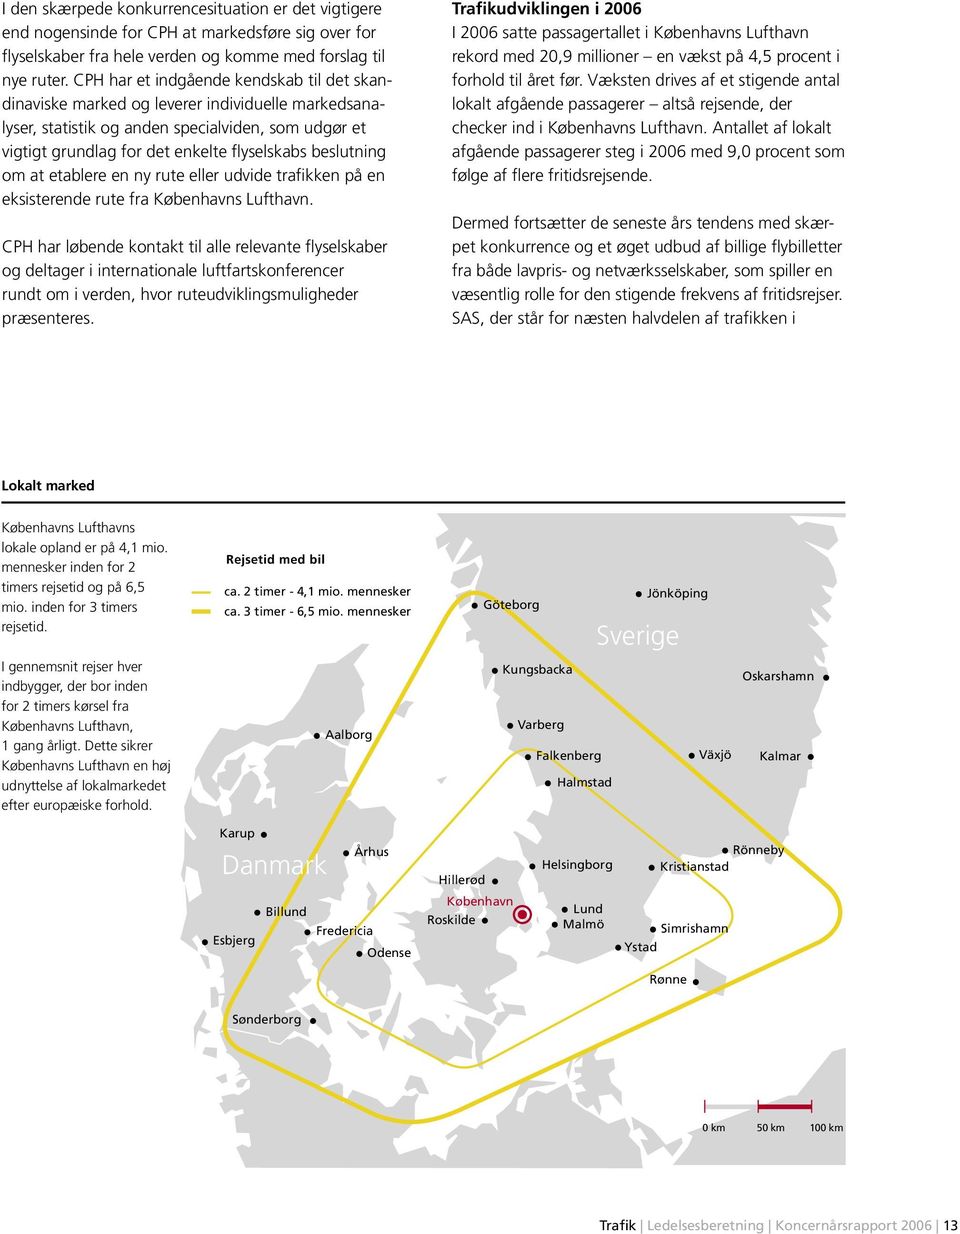 beslutning om at etablere en ny rute eller udvide trafikken på en eksisterende rute fra Københavns Lufthavn.